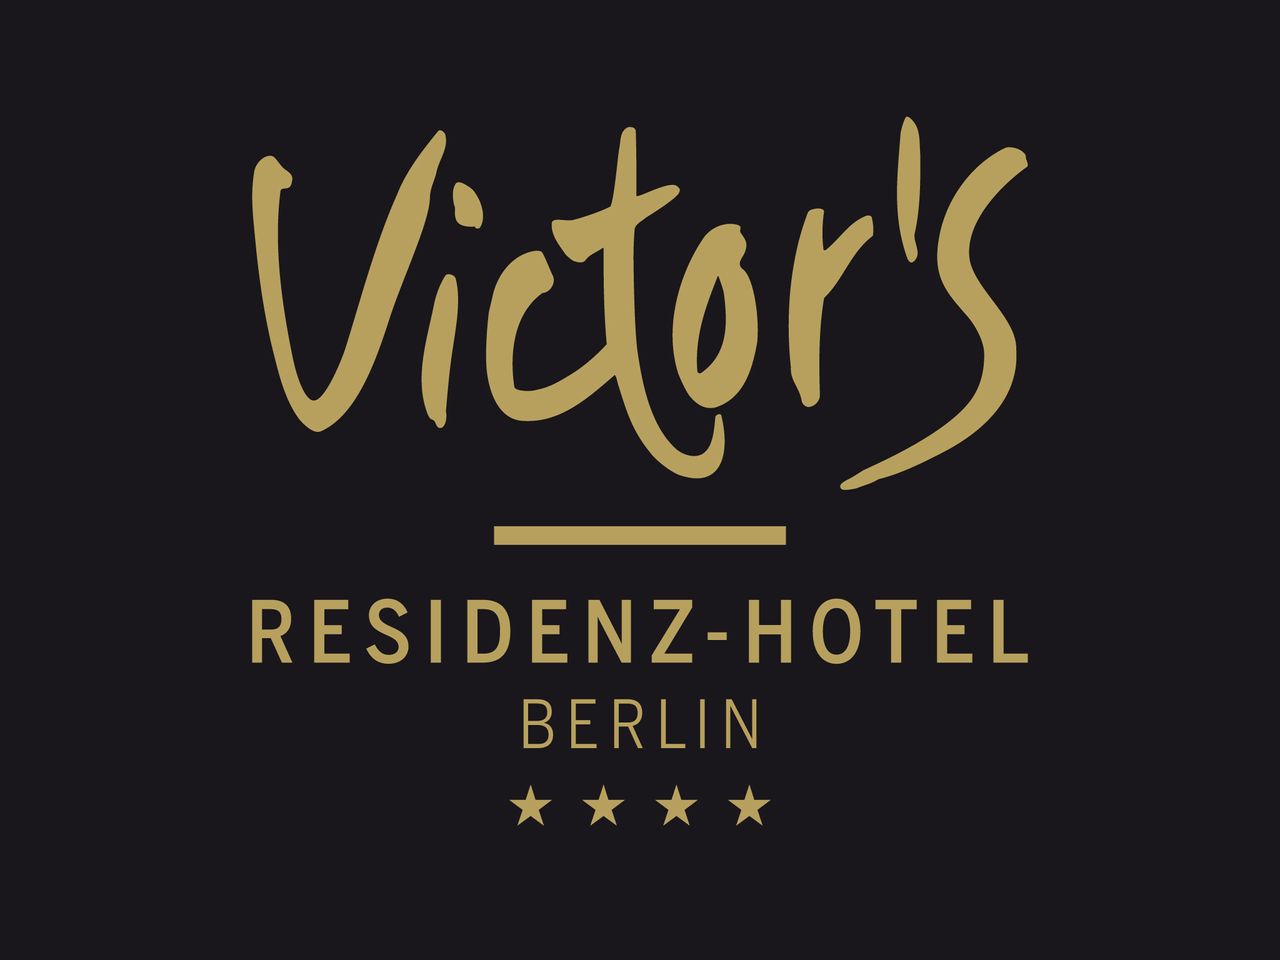 Berlin erleben! - 3 Tage im Victor´s Residenz-Hotel